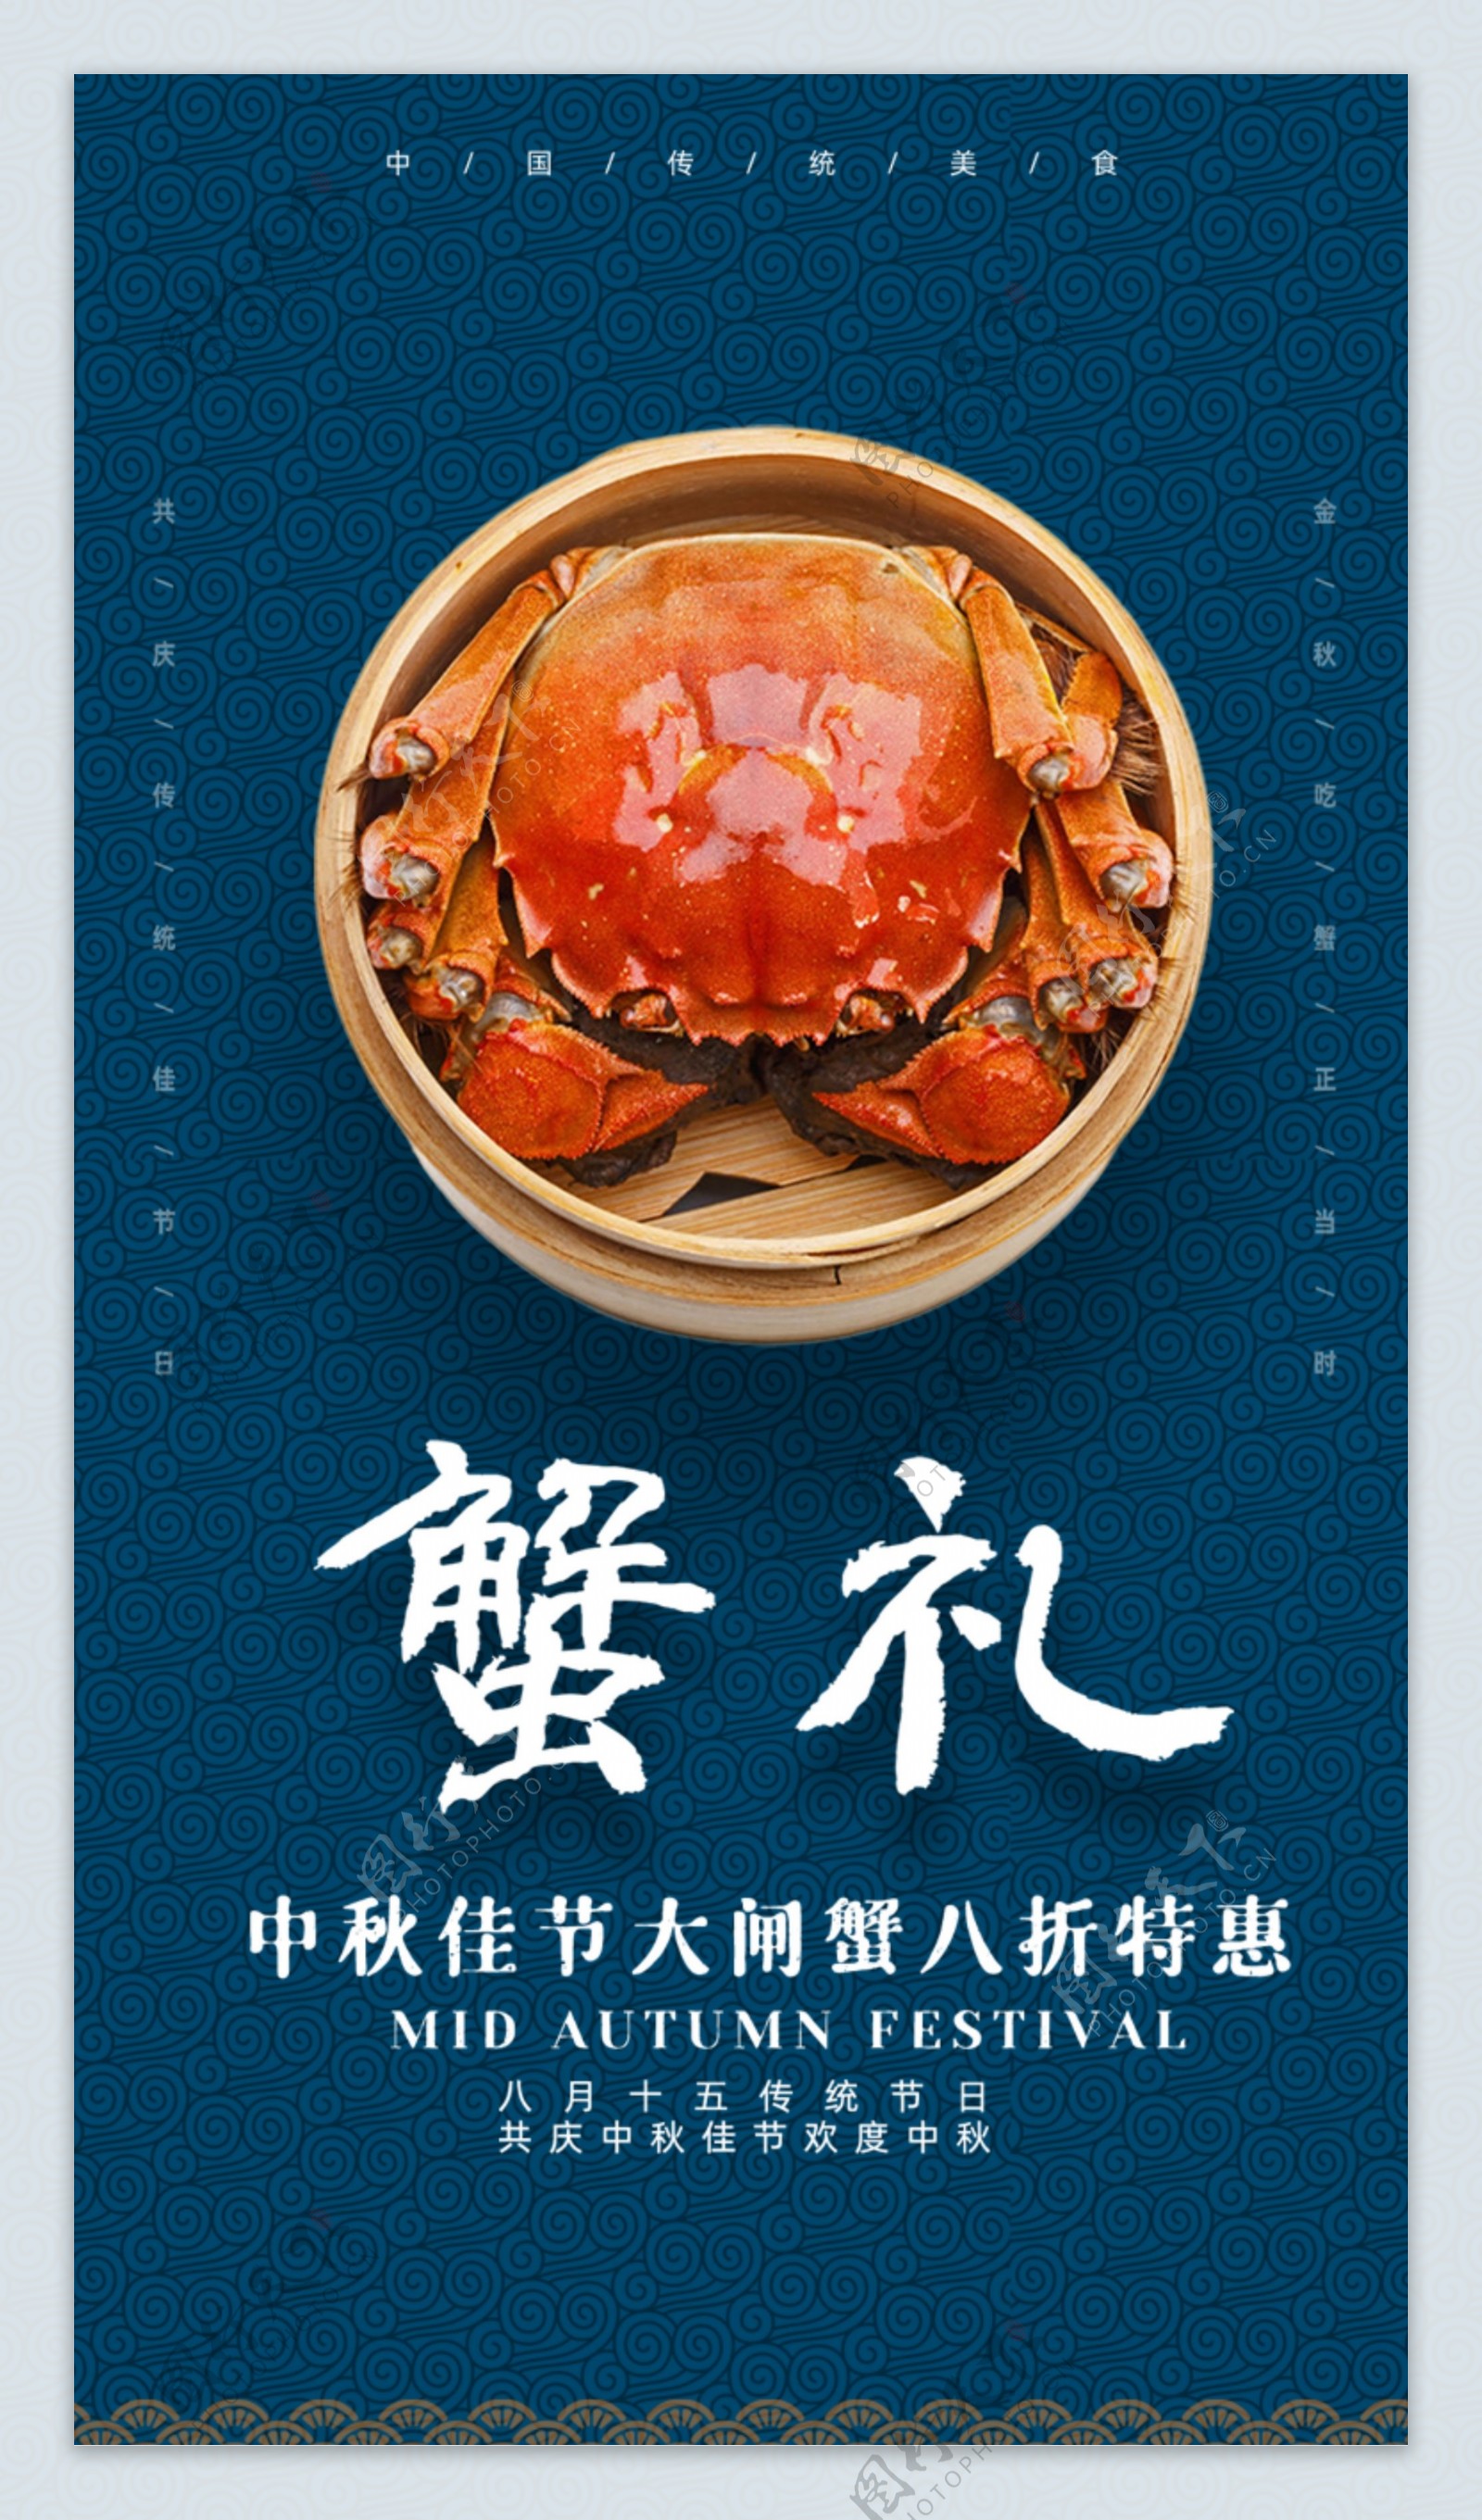 金秋大闸蟹时尚奢华美食宣传海报图片